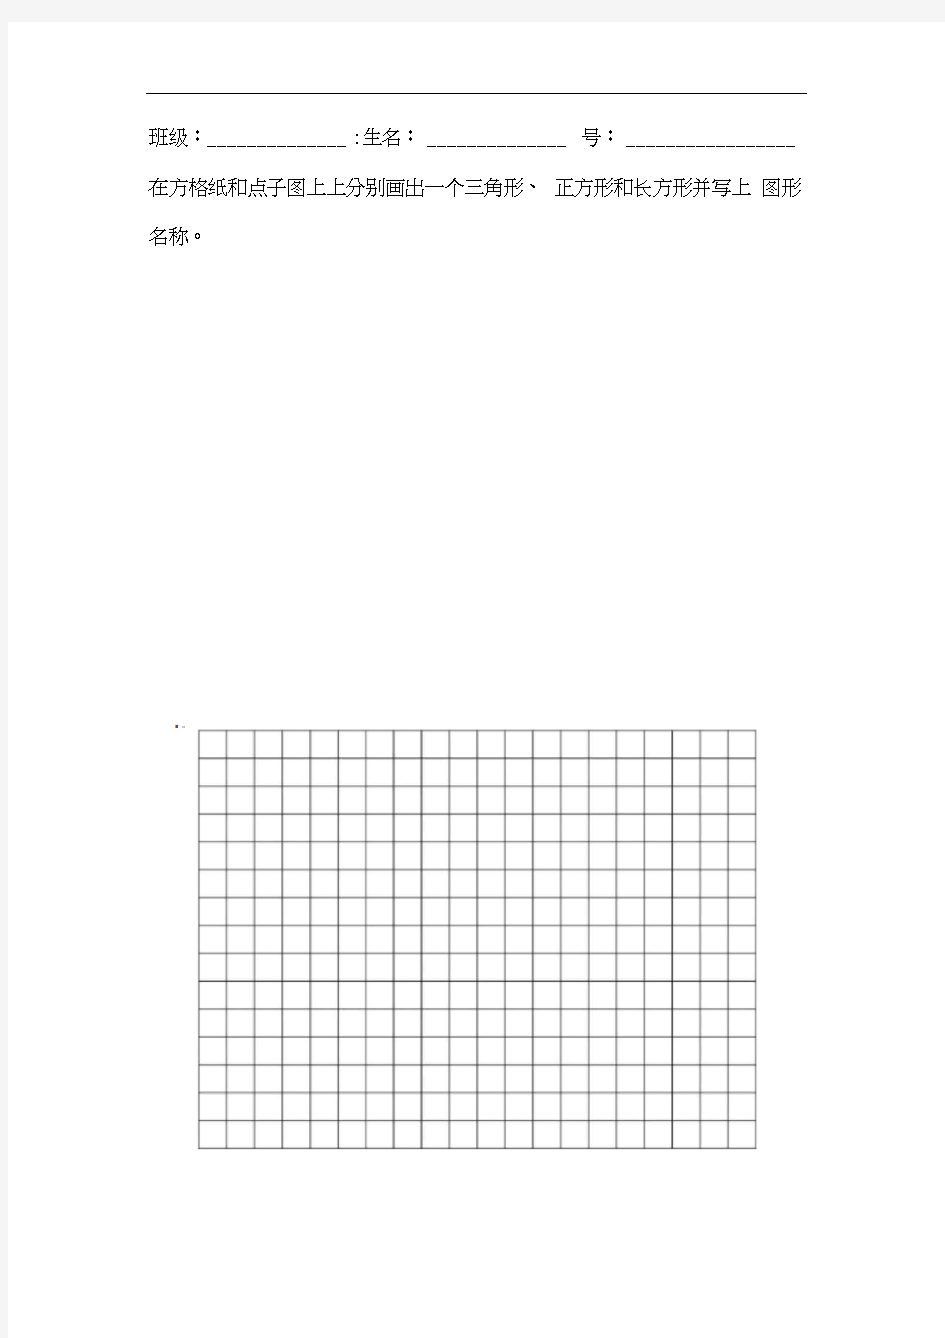 点子图、方格纸(20200928151010)